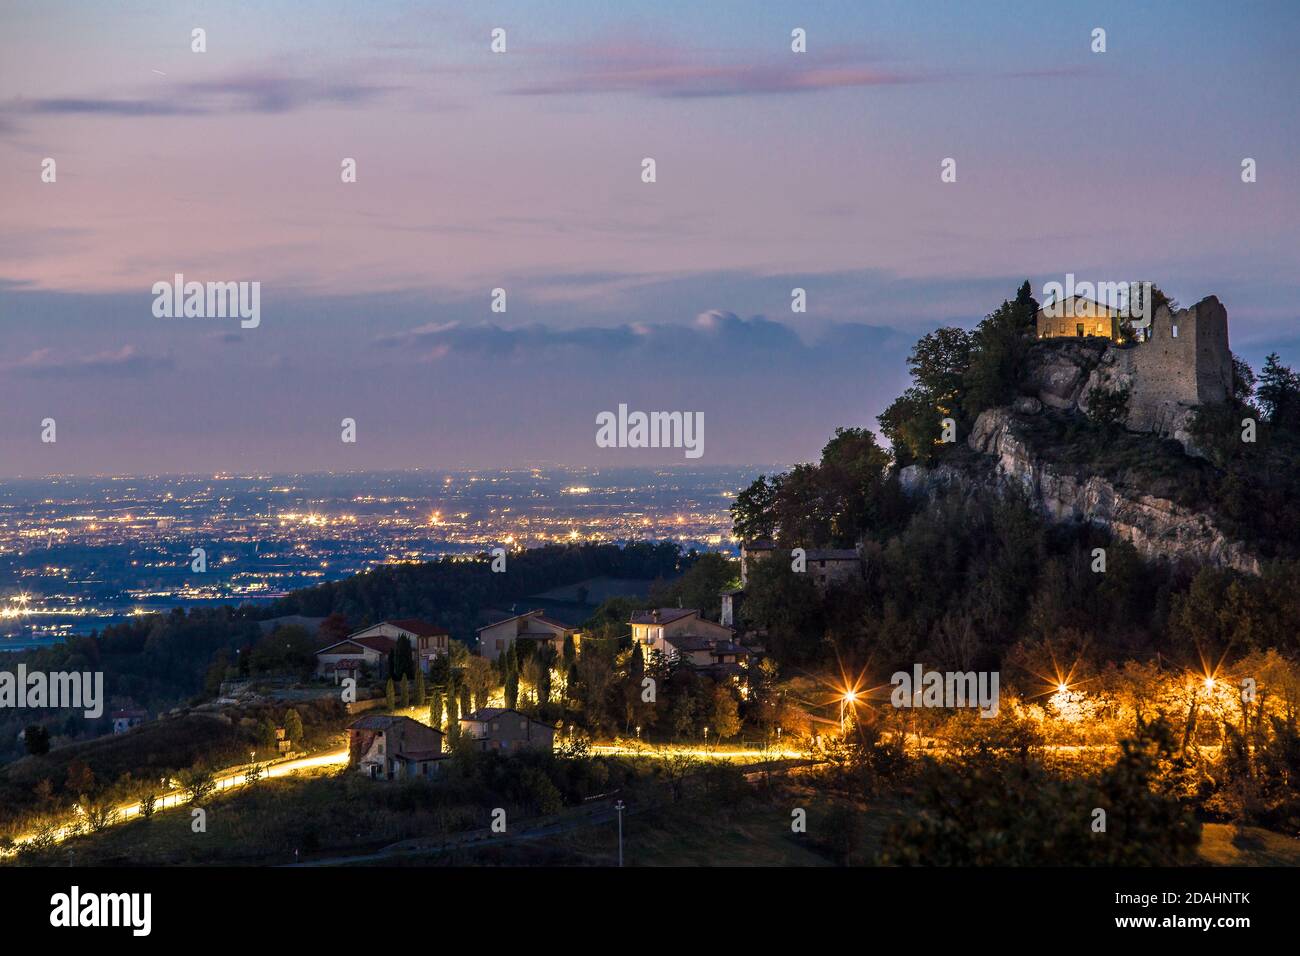 Vista panoramica del castello di canossa, colline di campagna e semafori all'ora blu, Canossa, Reggio Emilia, Italia Foto Stock